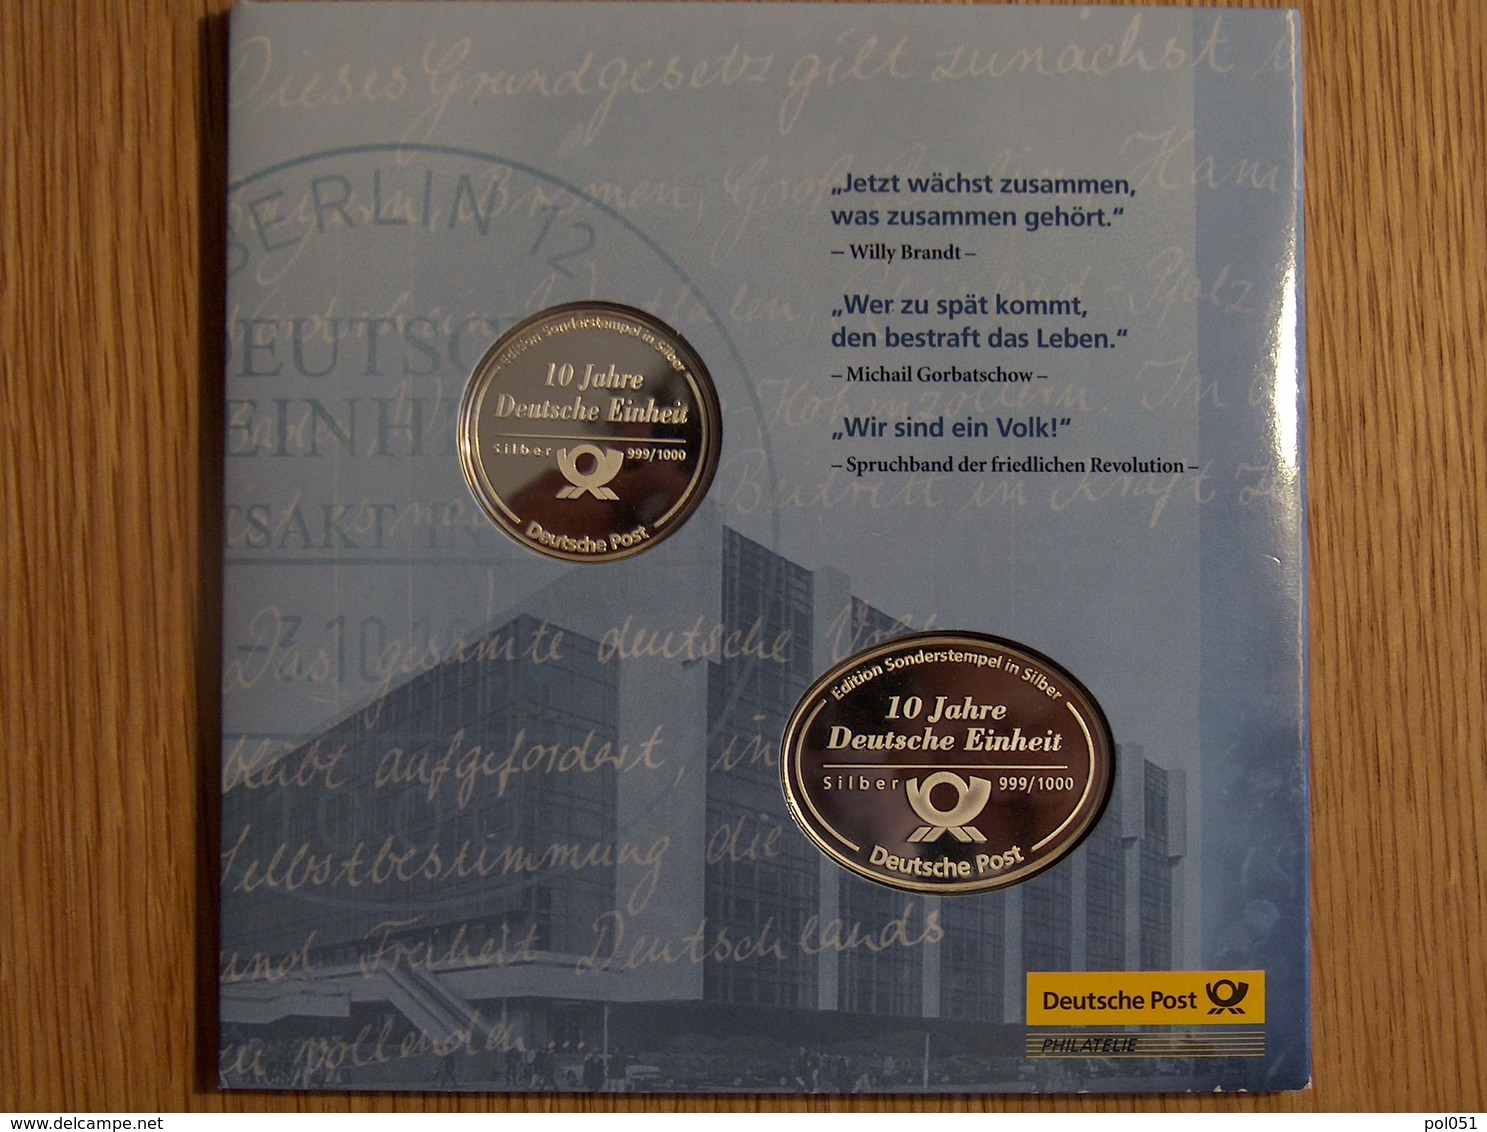 Die Sonderstempel Der Deutschen Post Oktober 1990 Argent Silver - Colecciones